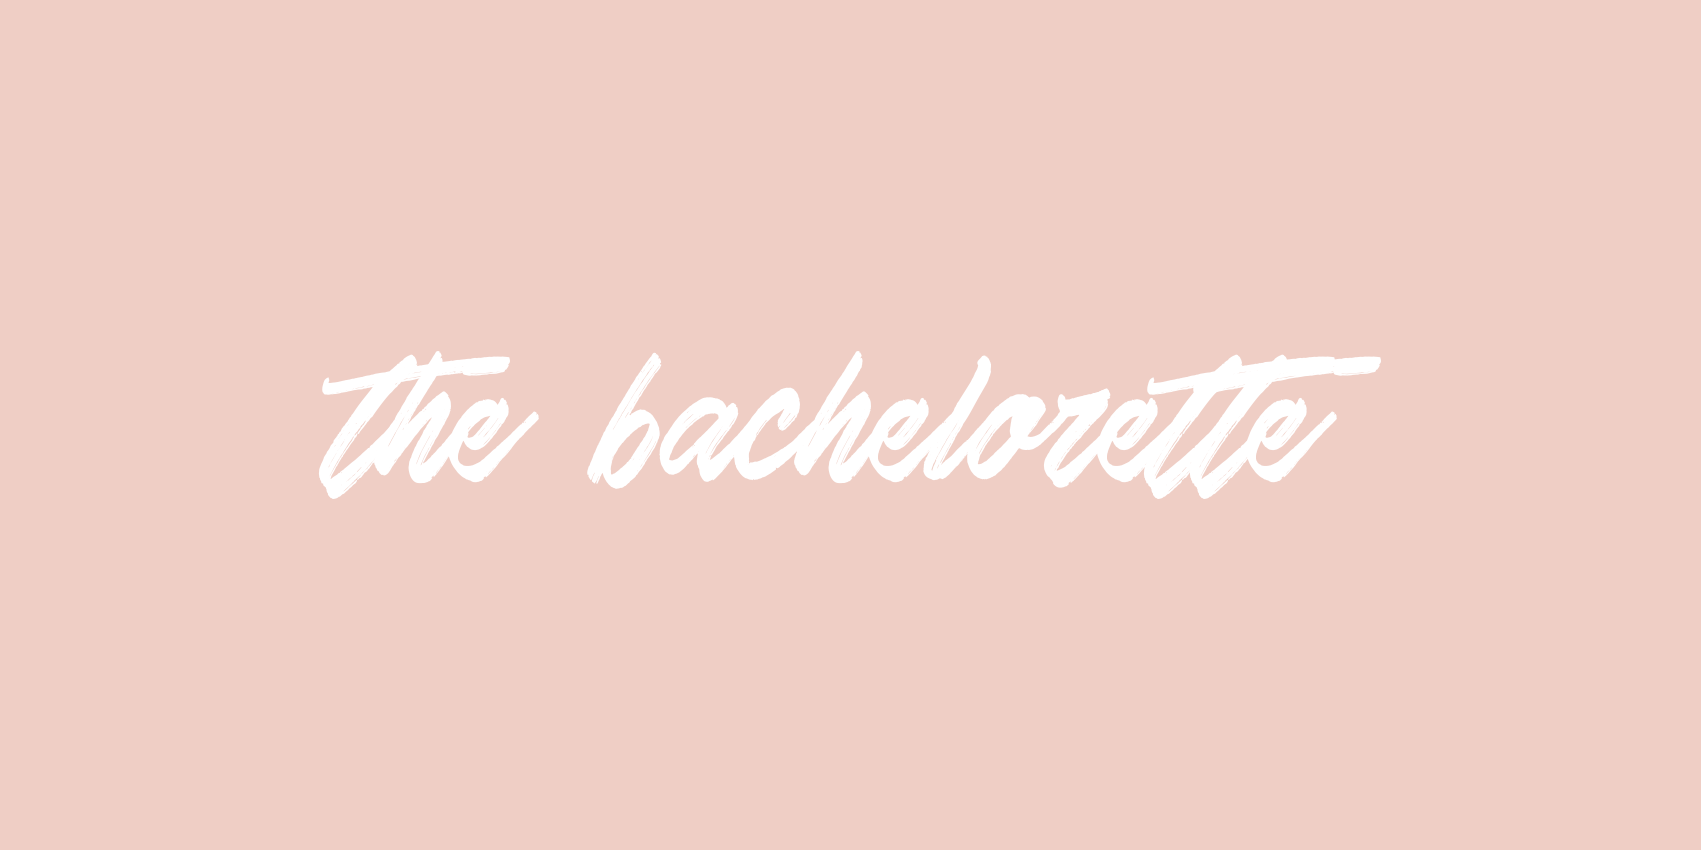 The Bachelorette Report